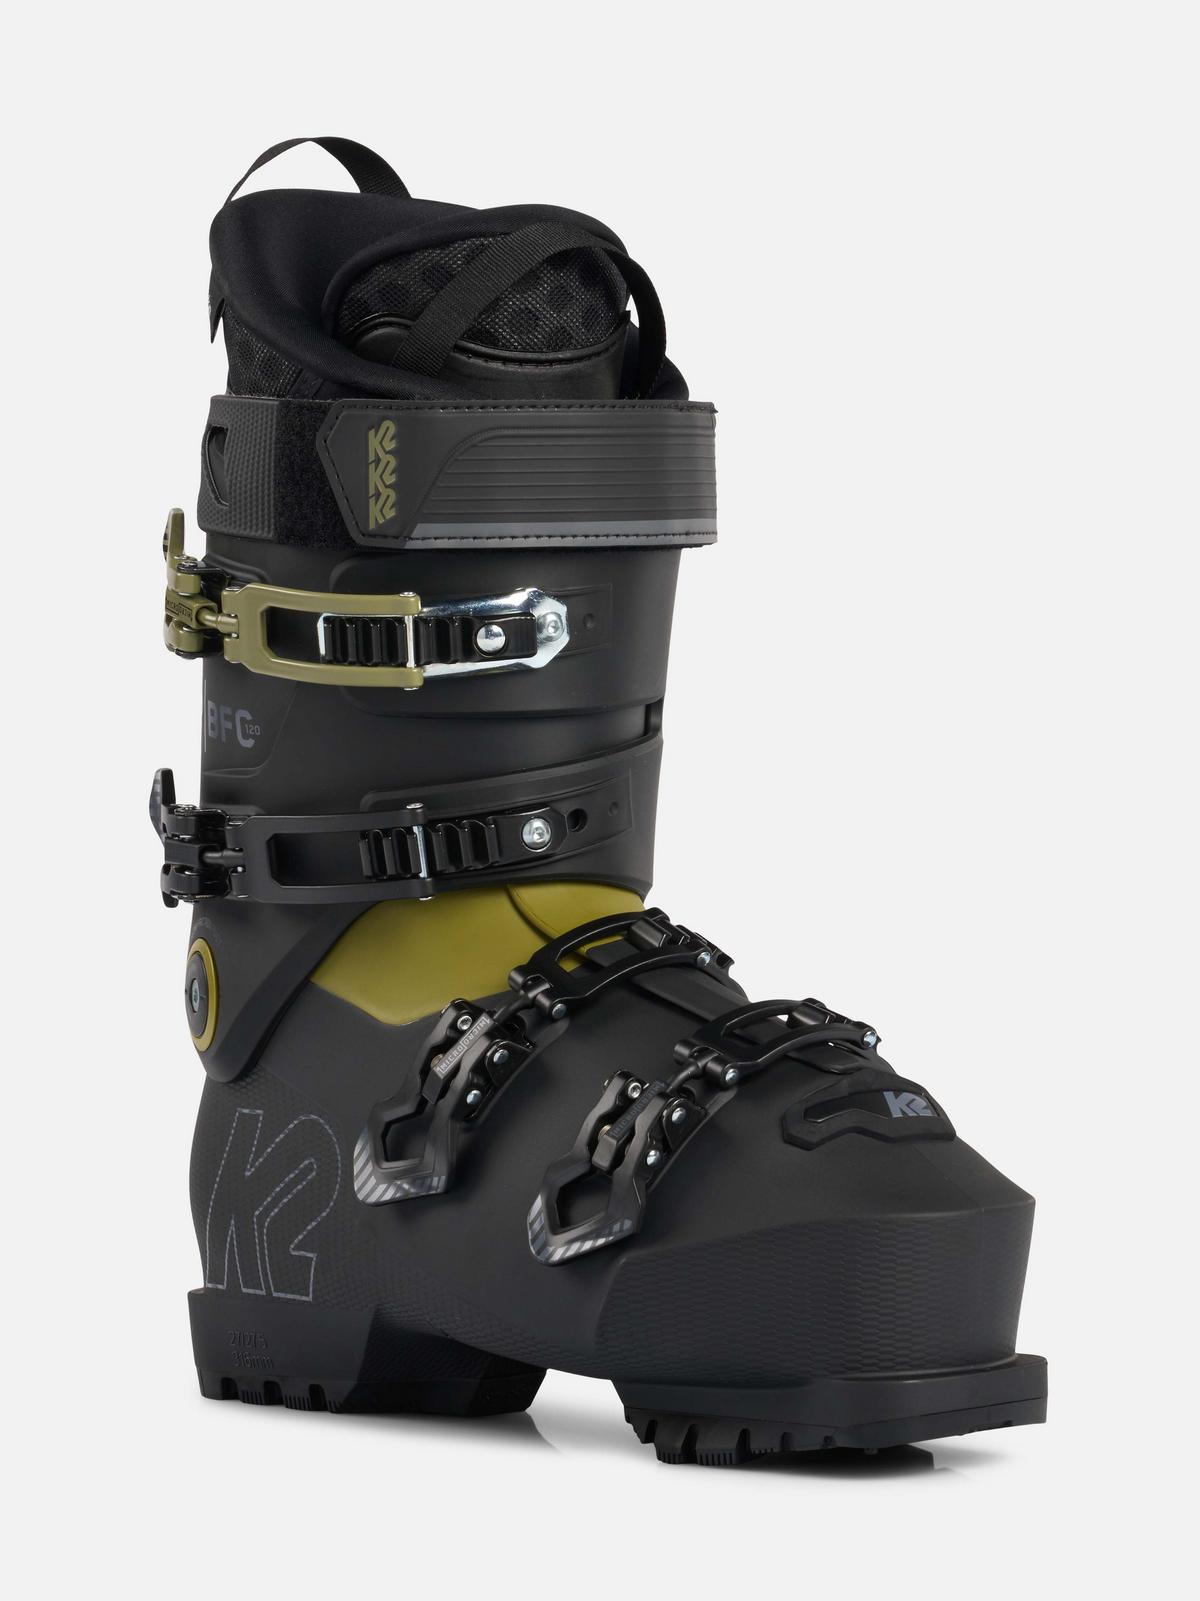 B.F.C. 120 Ski Boots